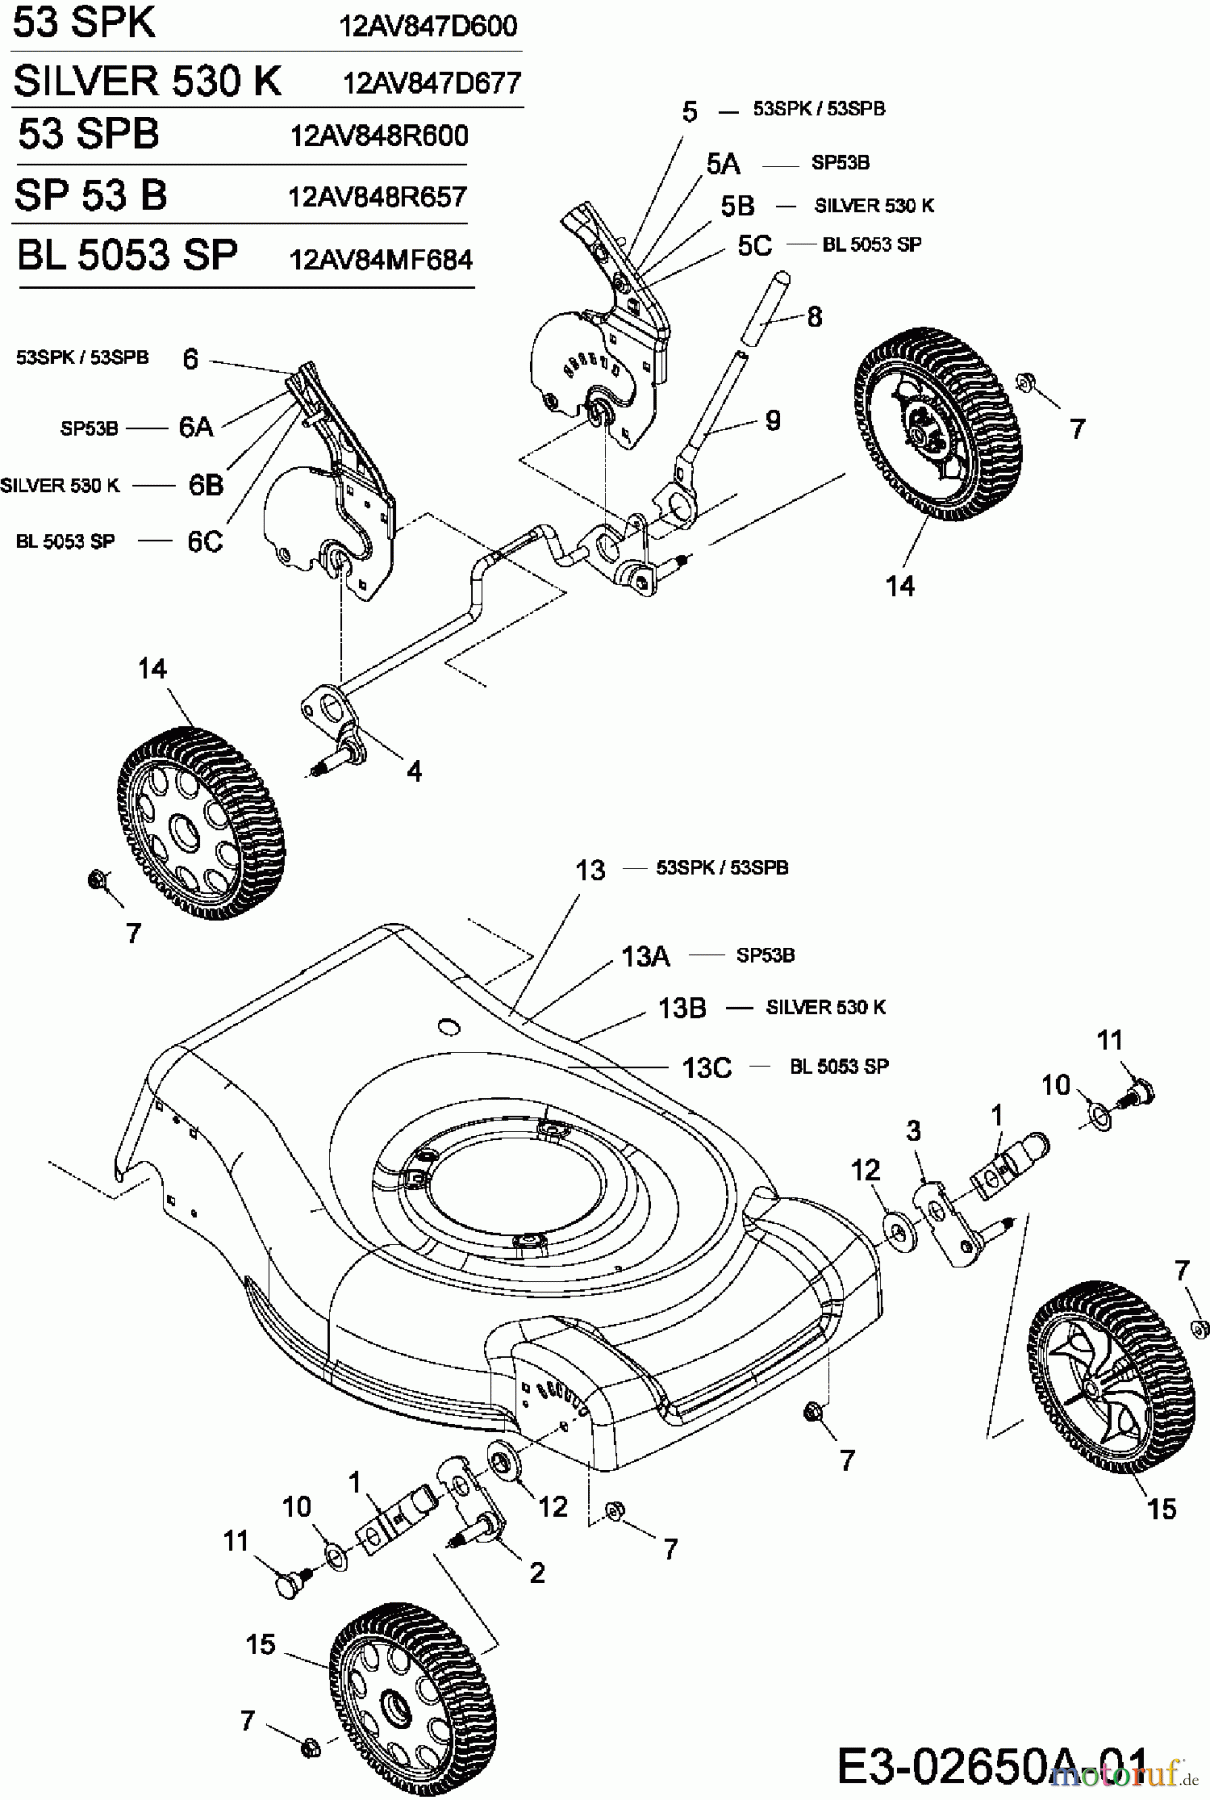  Mastercut Motormäher mit Antrieb SP 53 B 12AV848R657  (2006) Räder, Schnitthöhenverstellung